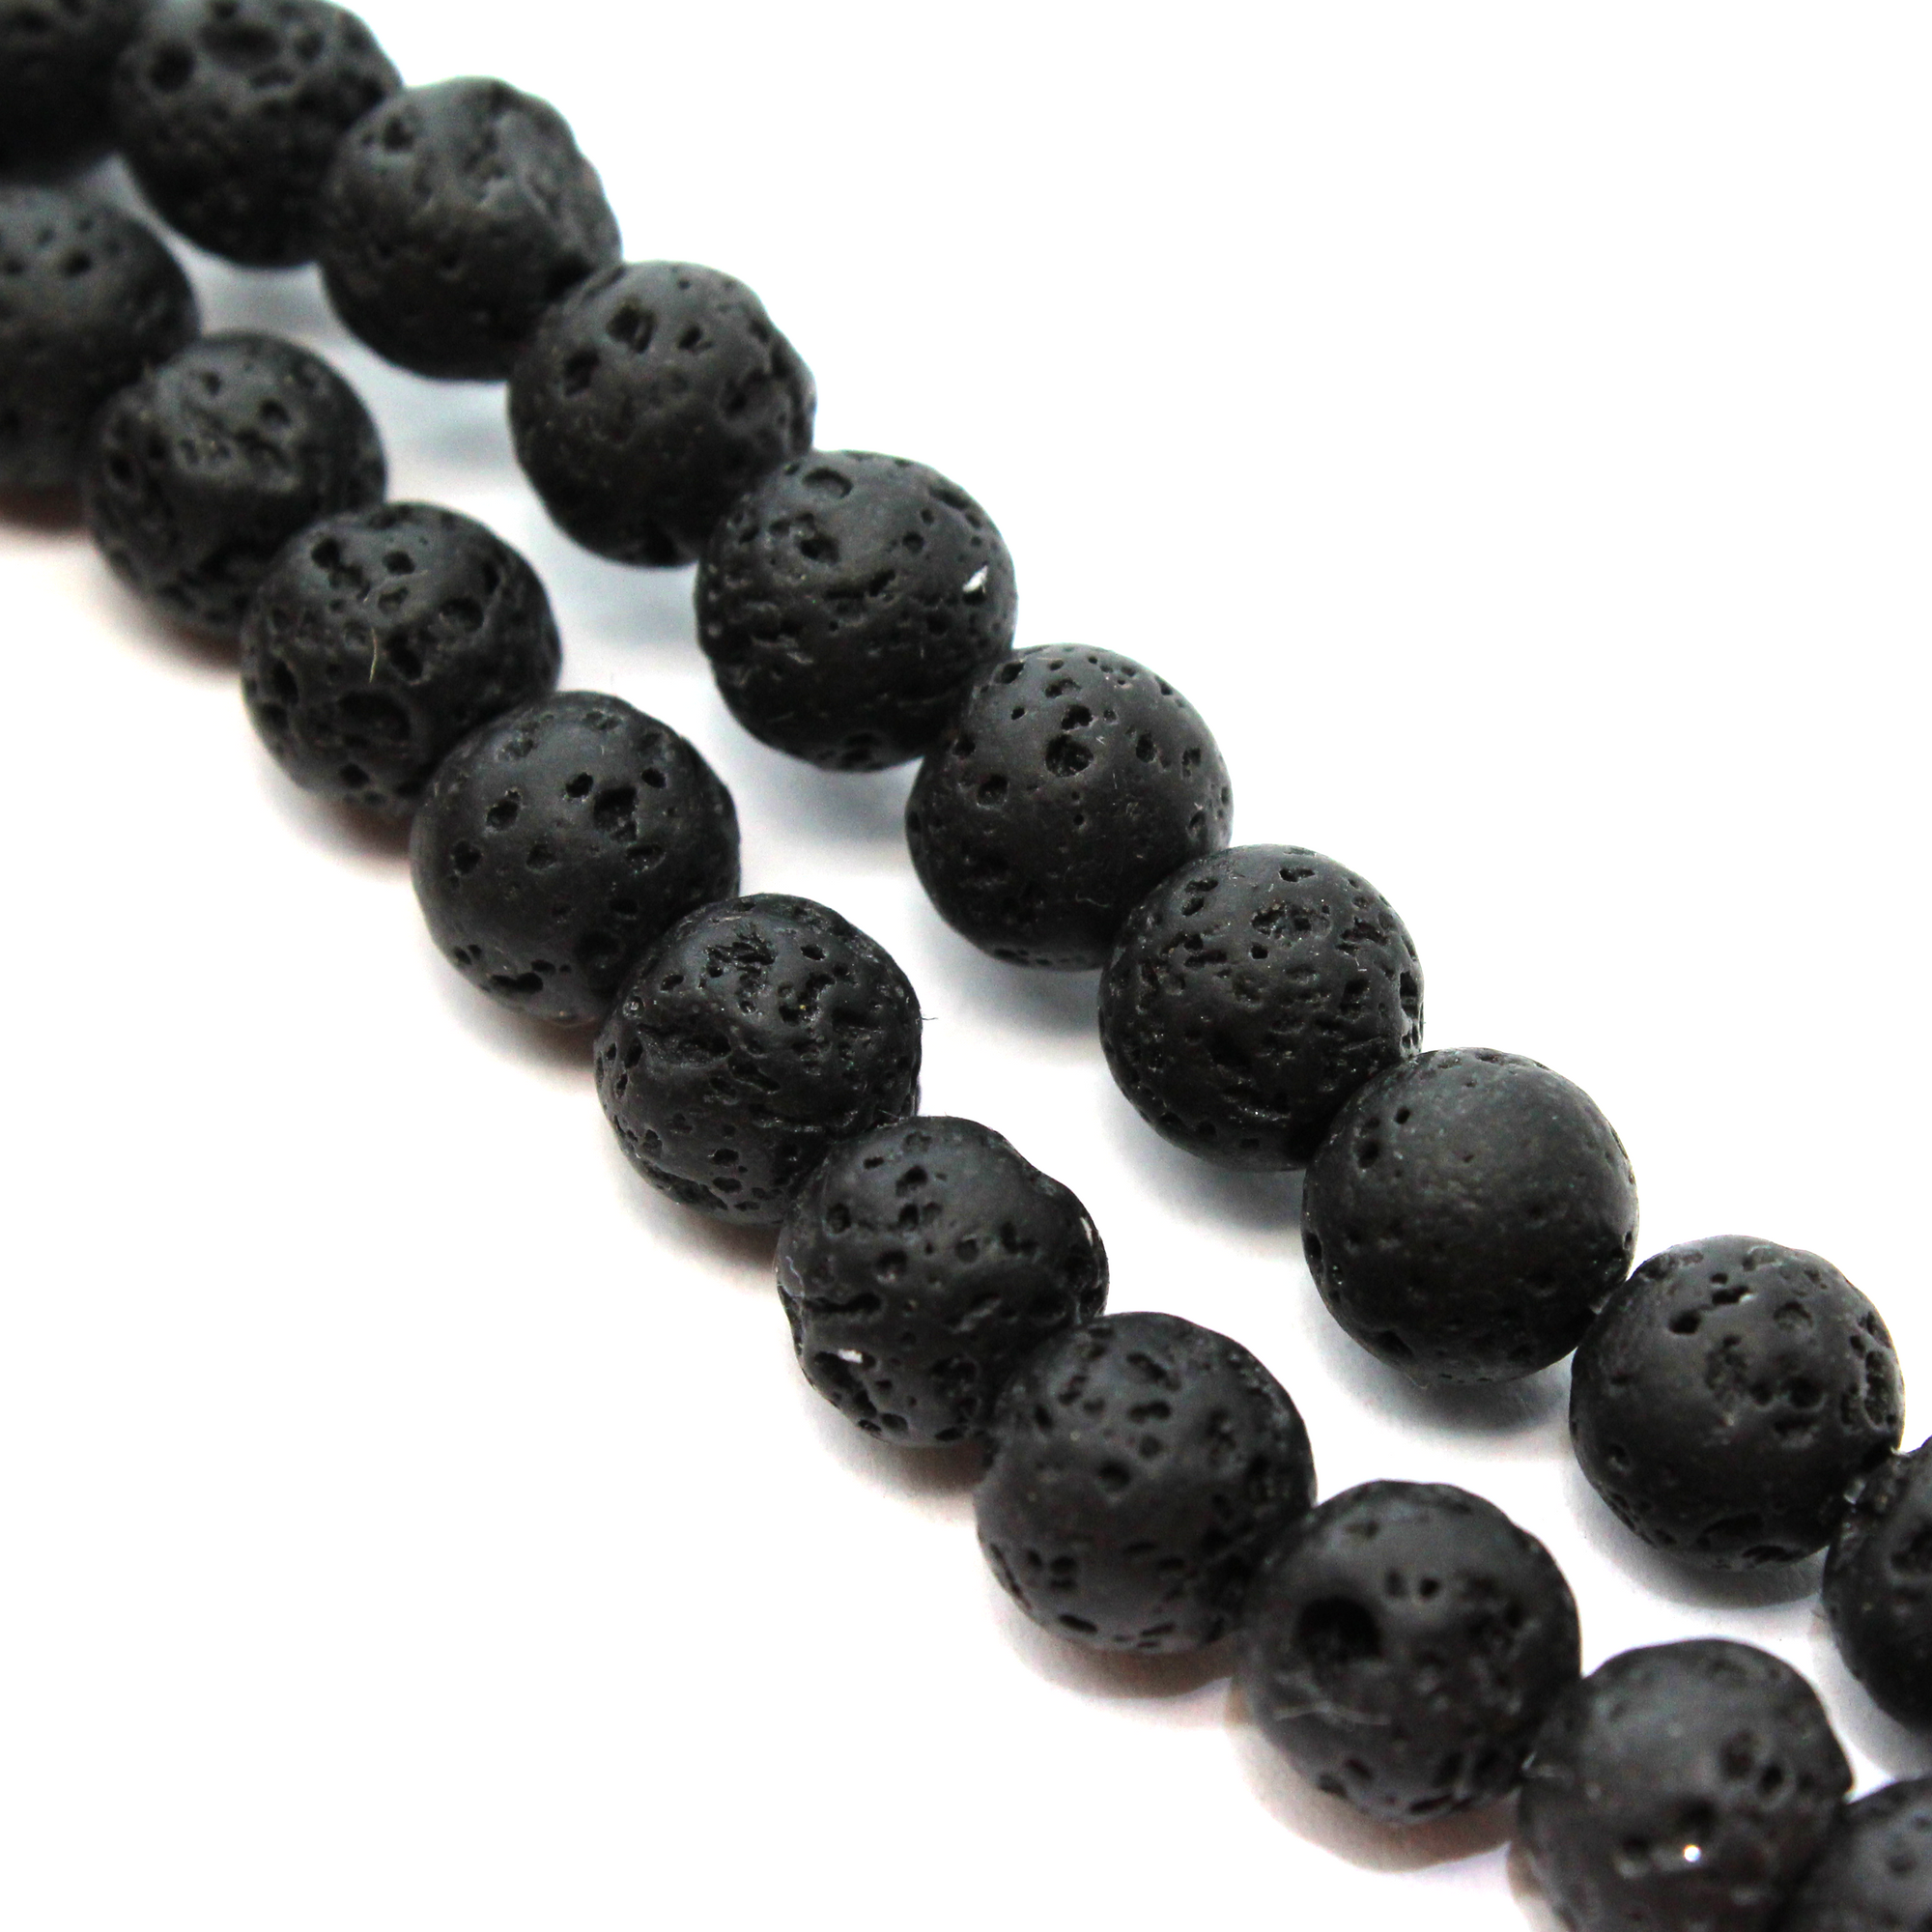 Black Lava Stone, Semi-Precious Stone, 12mm, 30 pcs per strand